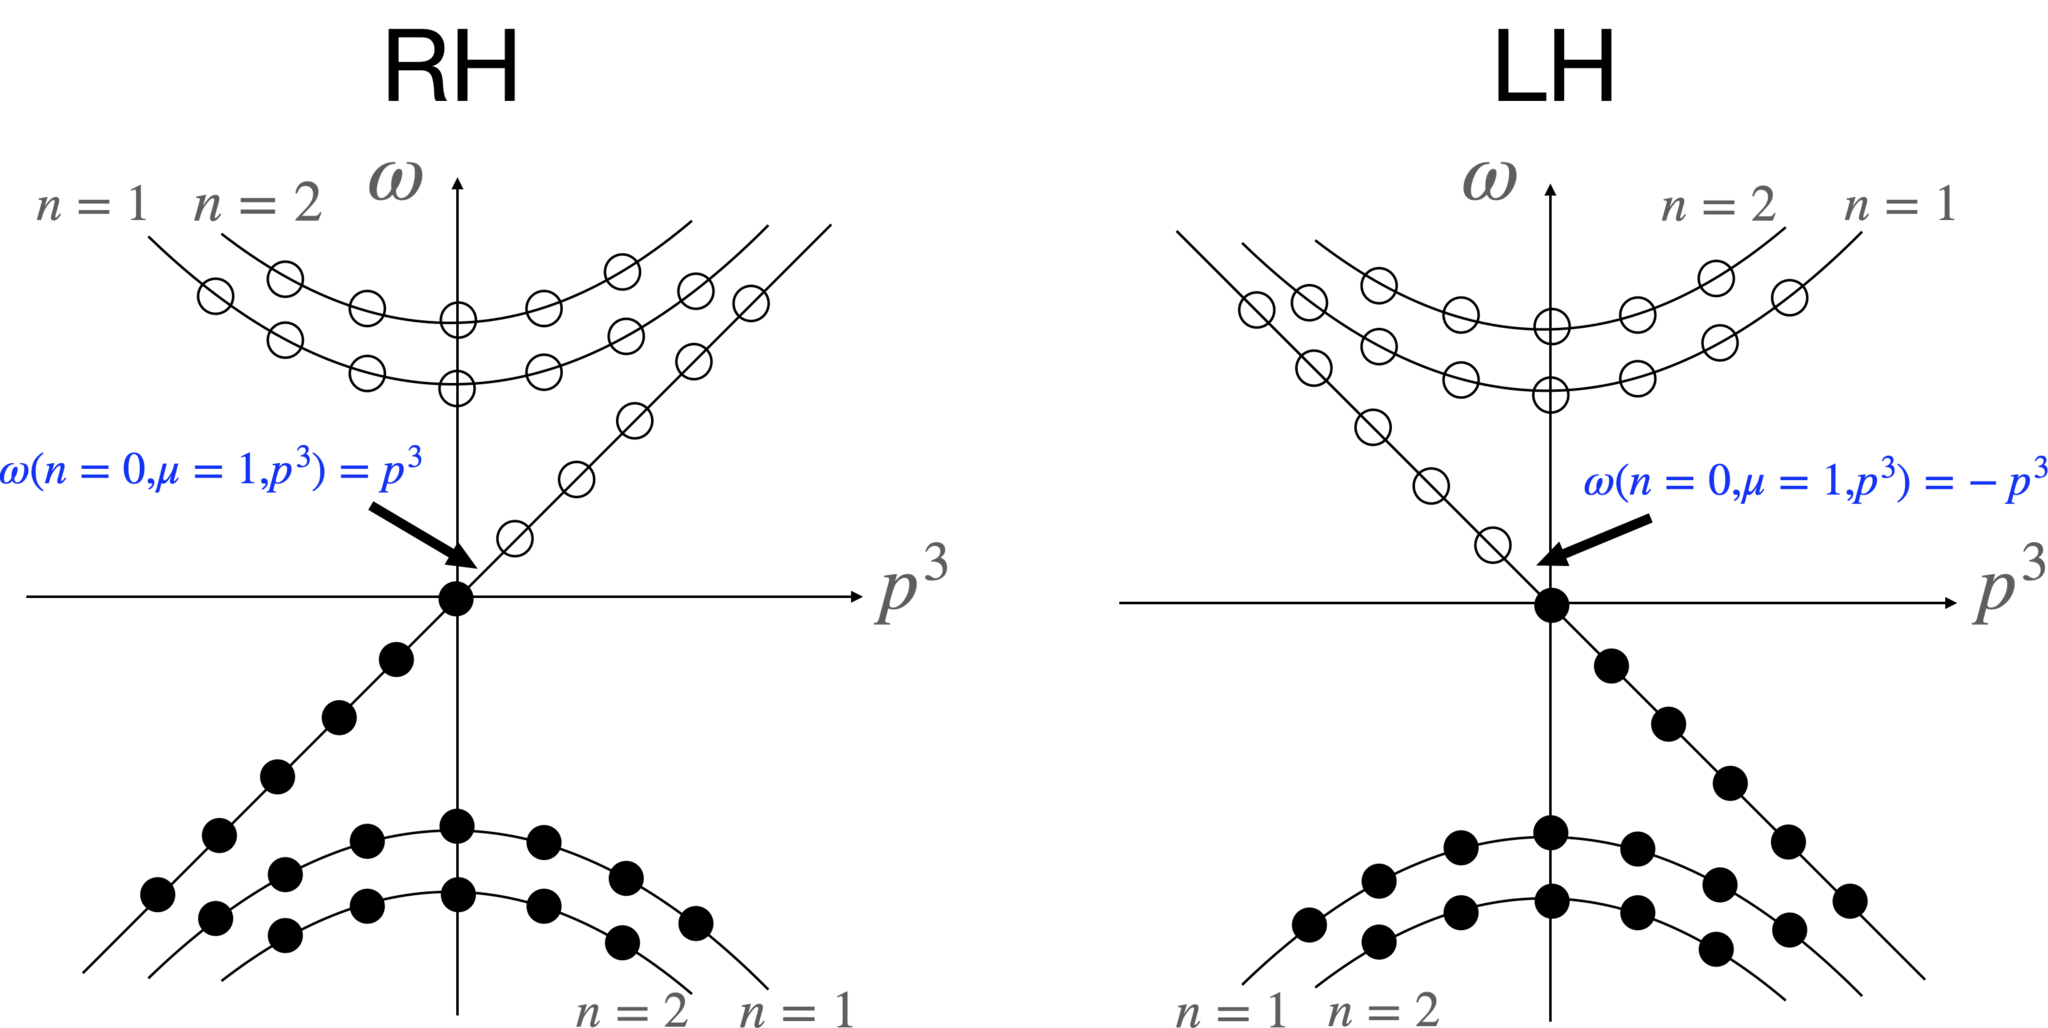 エネルギー準位とz方向の運動量の関係 (dispersion relation)。左図はRHのdispresion、右図はLHのdispersion。どちらも線形のdispersionを持った状態がそれぞれ1つ存在する